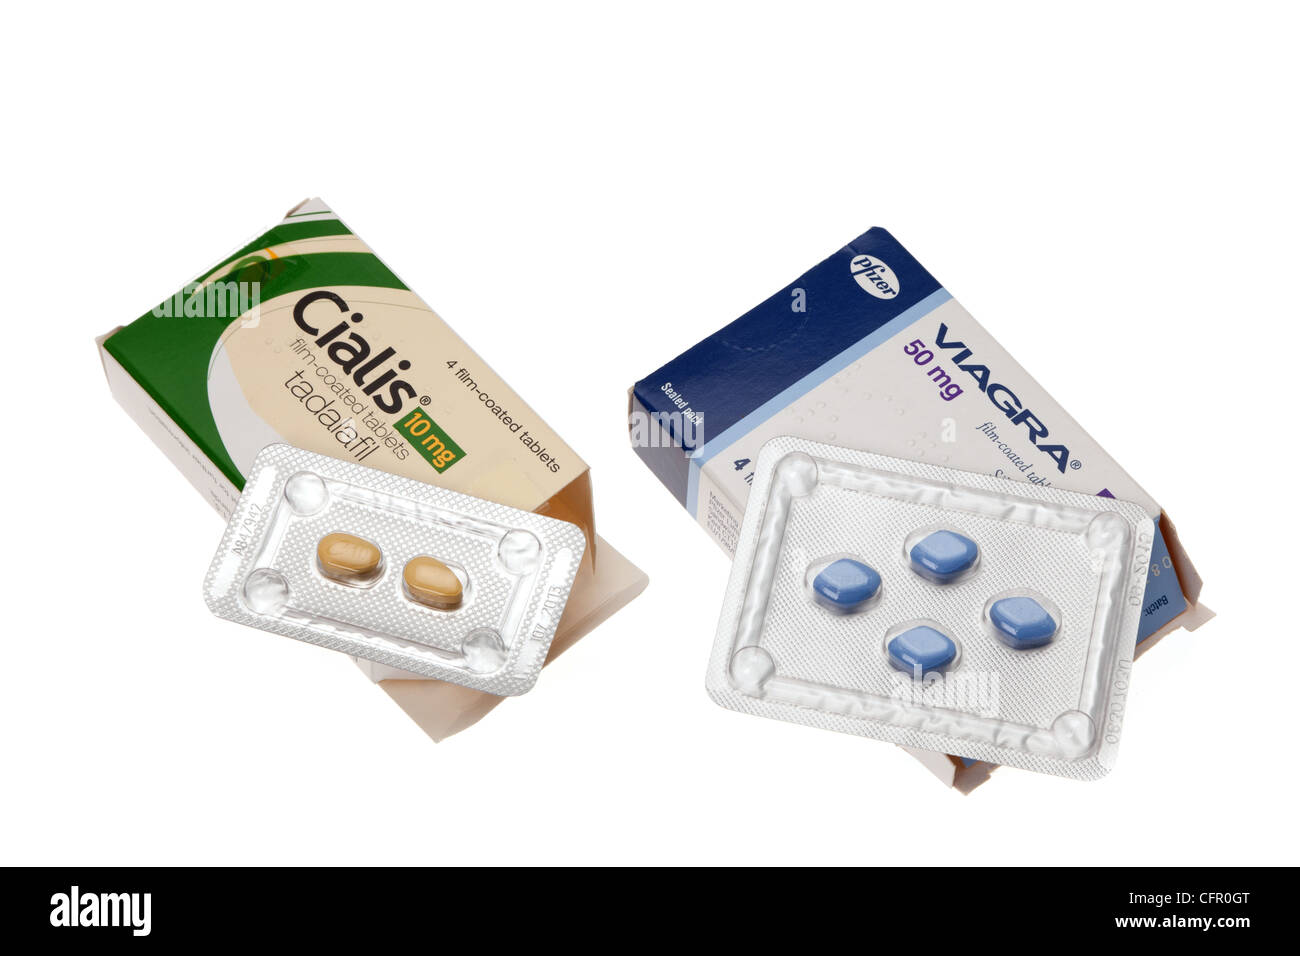 Hautnah die verschreibungspflichtige Tabletten Viagra und Cialis - beide  Medikamente sind zur Behandlung von Männern mit einer erektilen Dysfunktion  Stockfotografie - Alamy